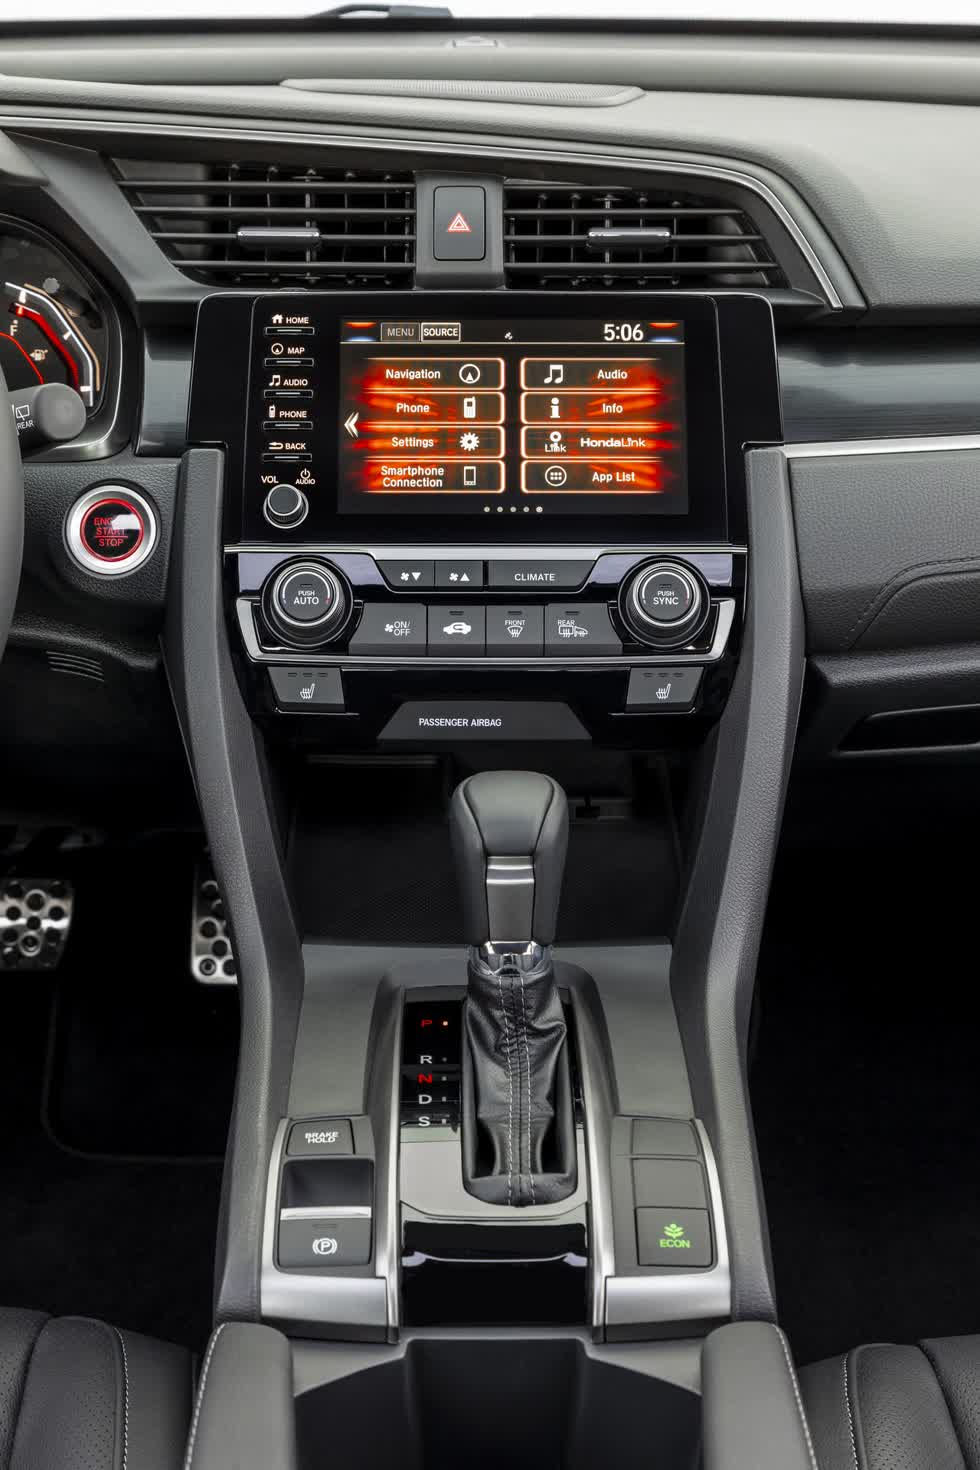 Bên trong, phiên bản 2020 của Civic trông sắc sảo hơn với các bảng điều khiển mới. Các nâng cấp khác bao gồm ghế lái chỉnh điện 8 hướng, vô lăng bọc da mới và núm xoay cho biến thể EX.